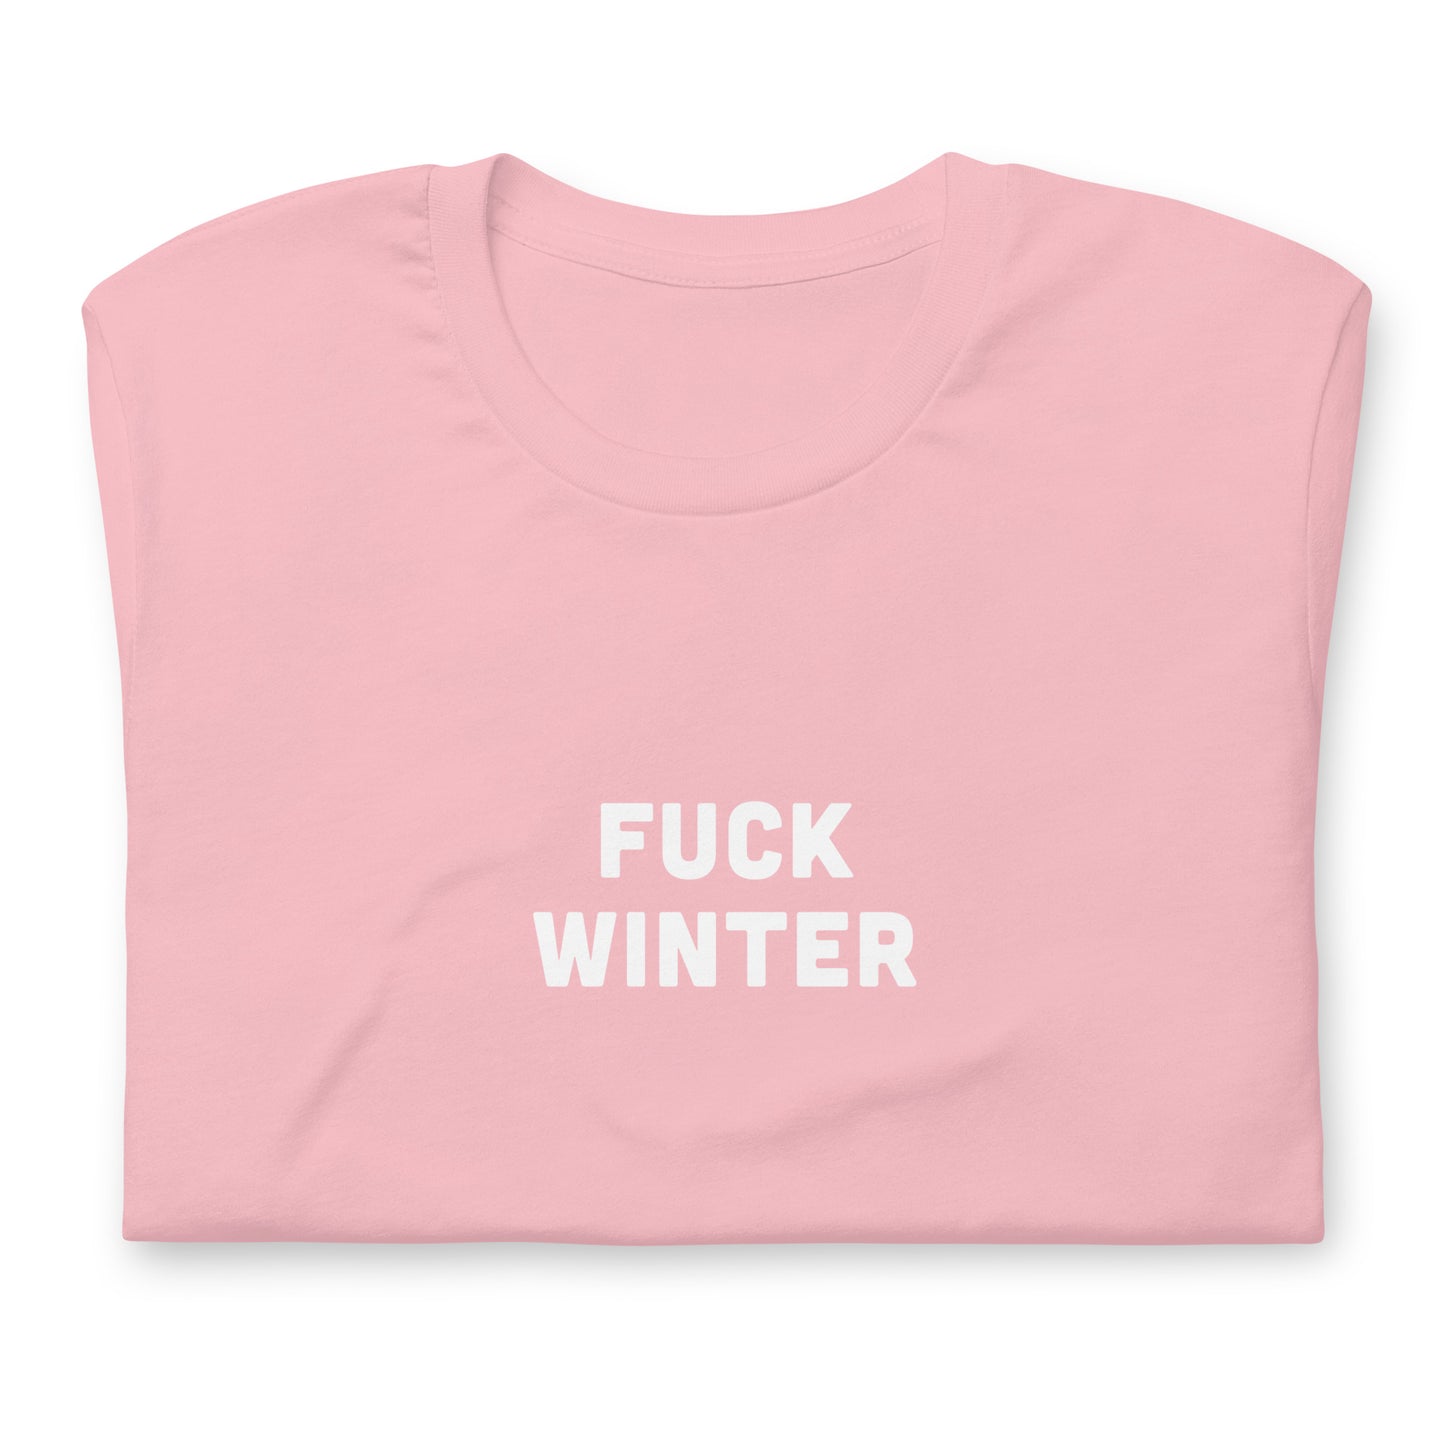 Fuck Winter T-Shirt Size M Color Asphalt